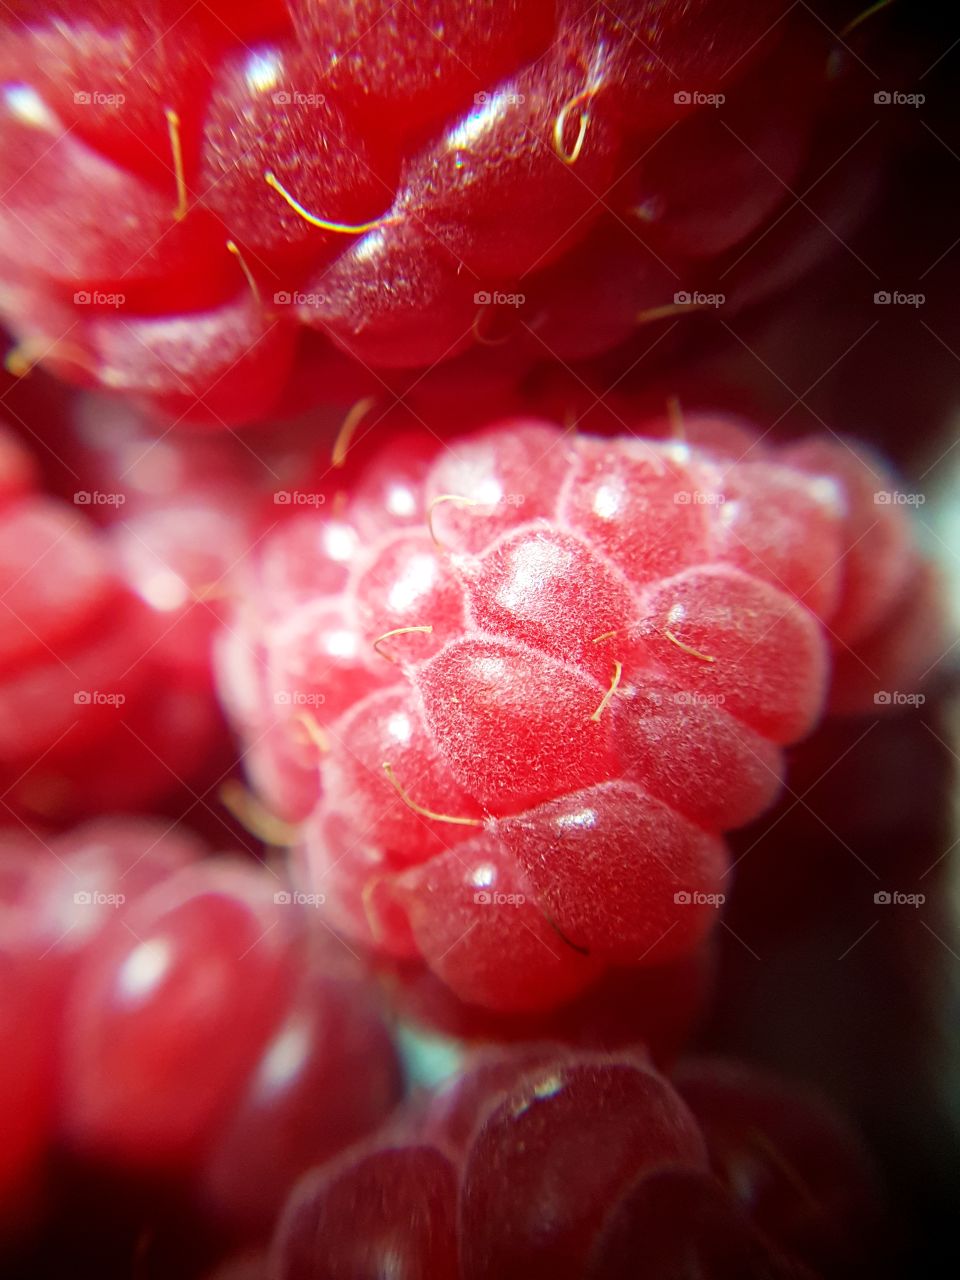 raspberry macro shot